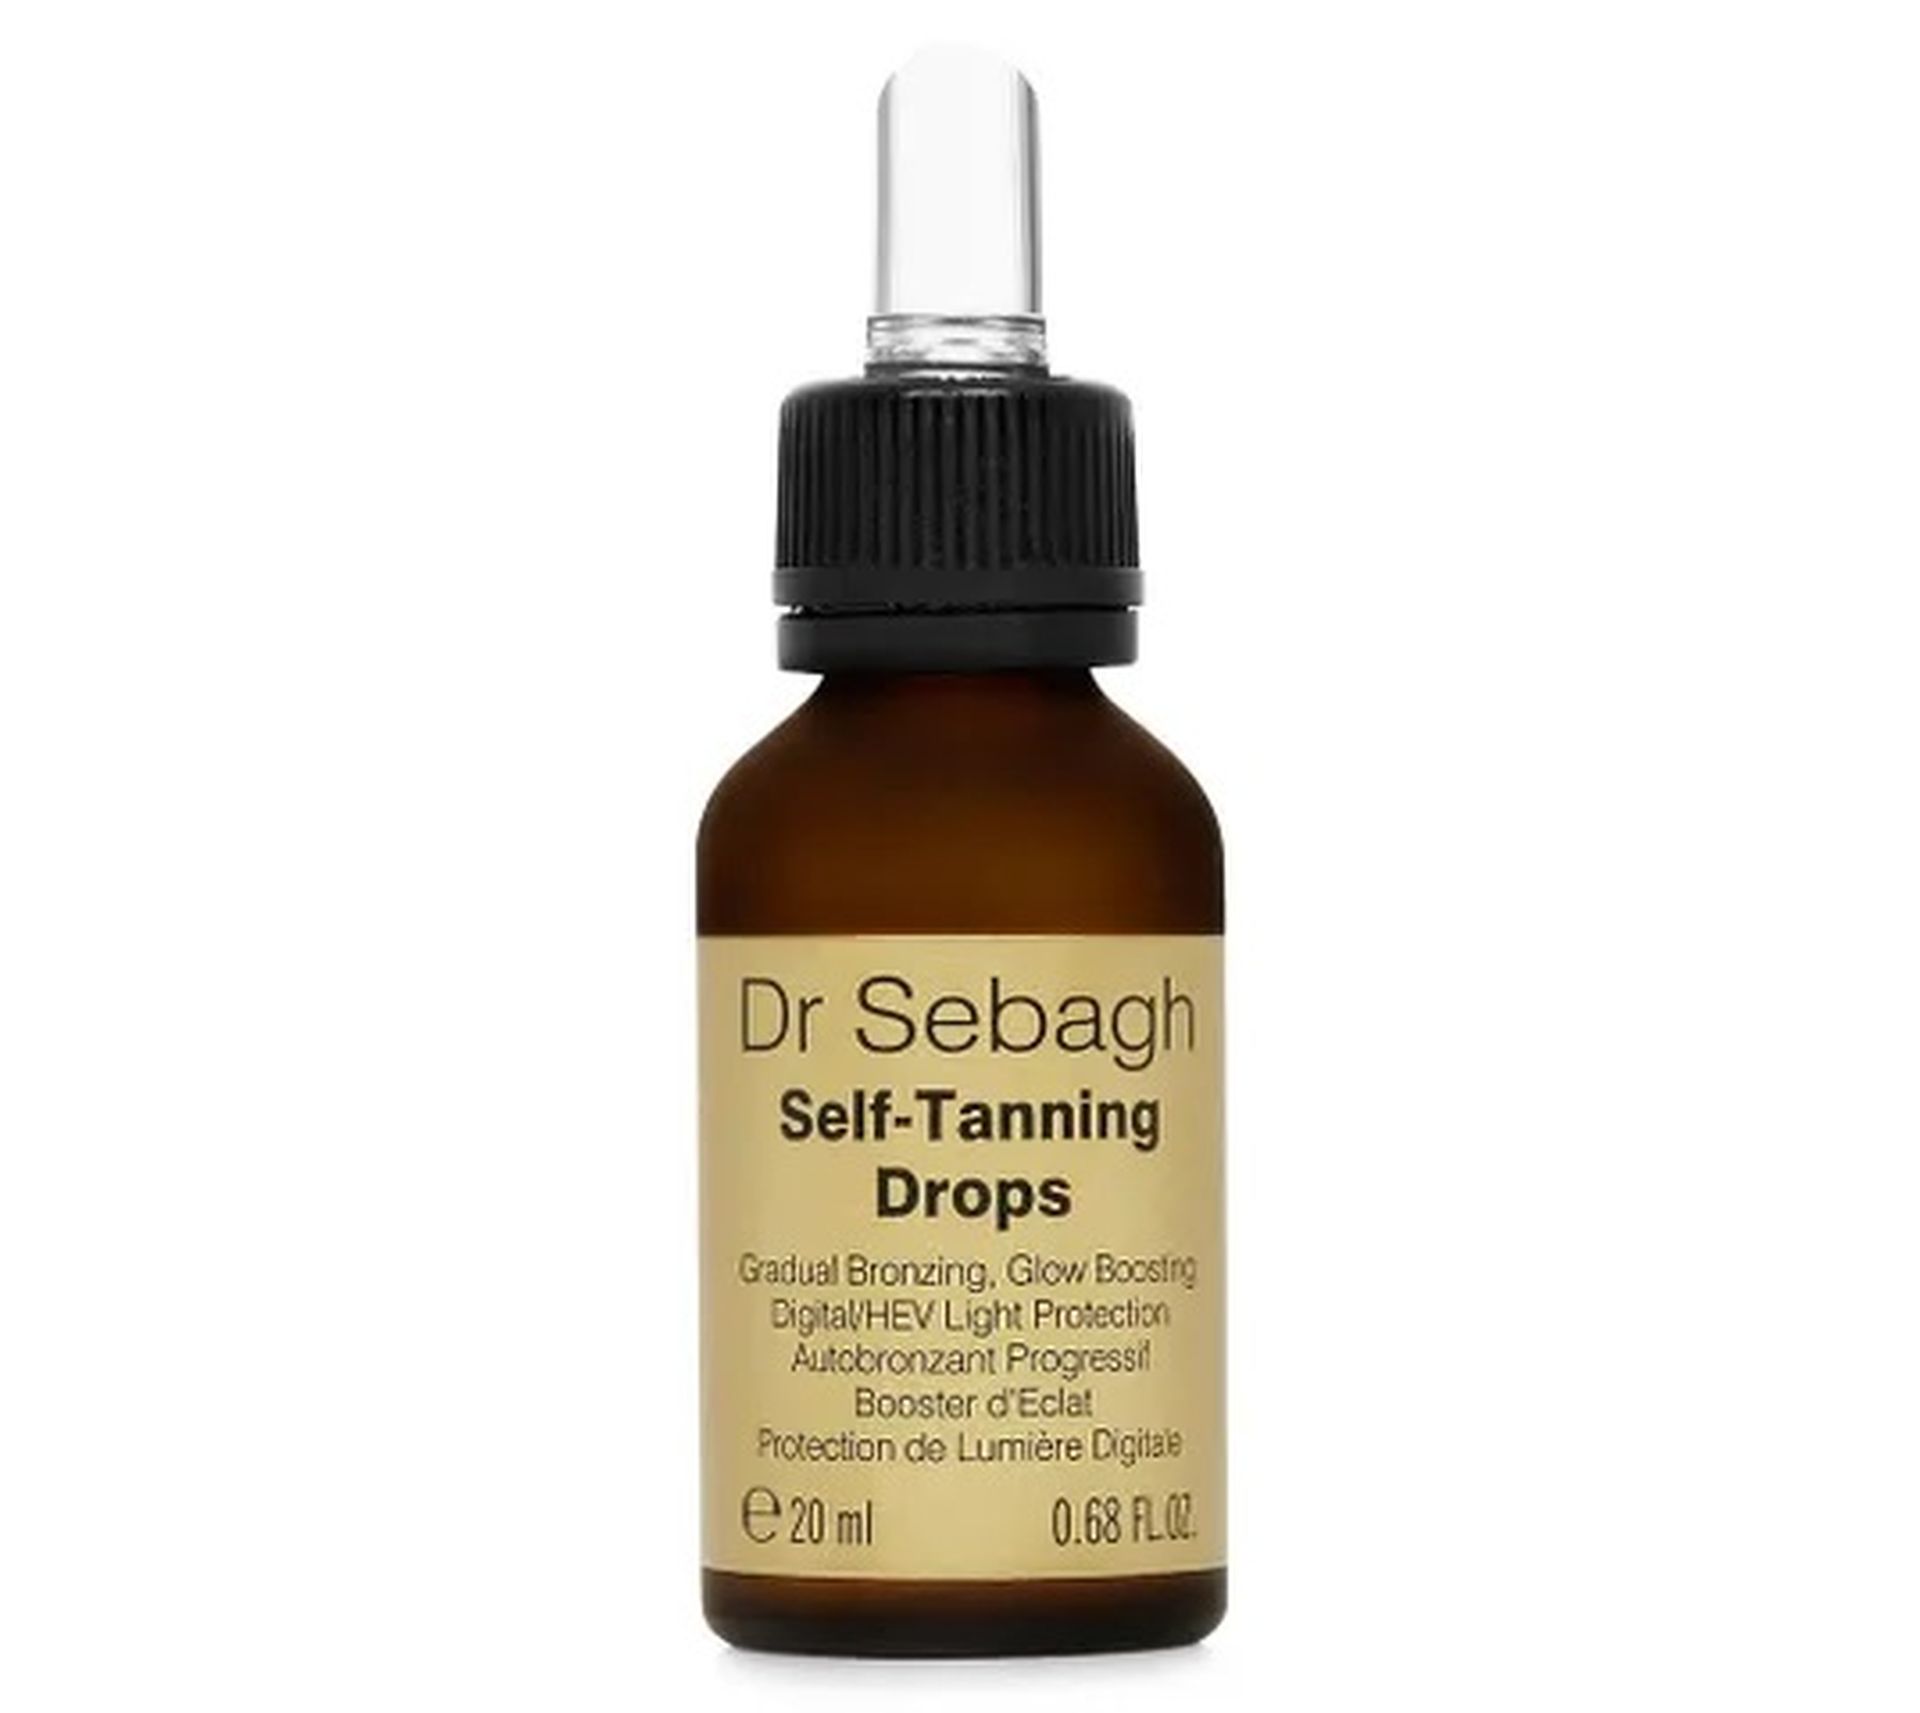 Dr Sebagh Self-Tanning Drops krople samoopalające (20 ml)